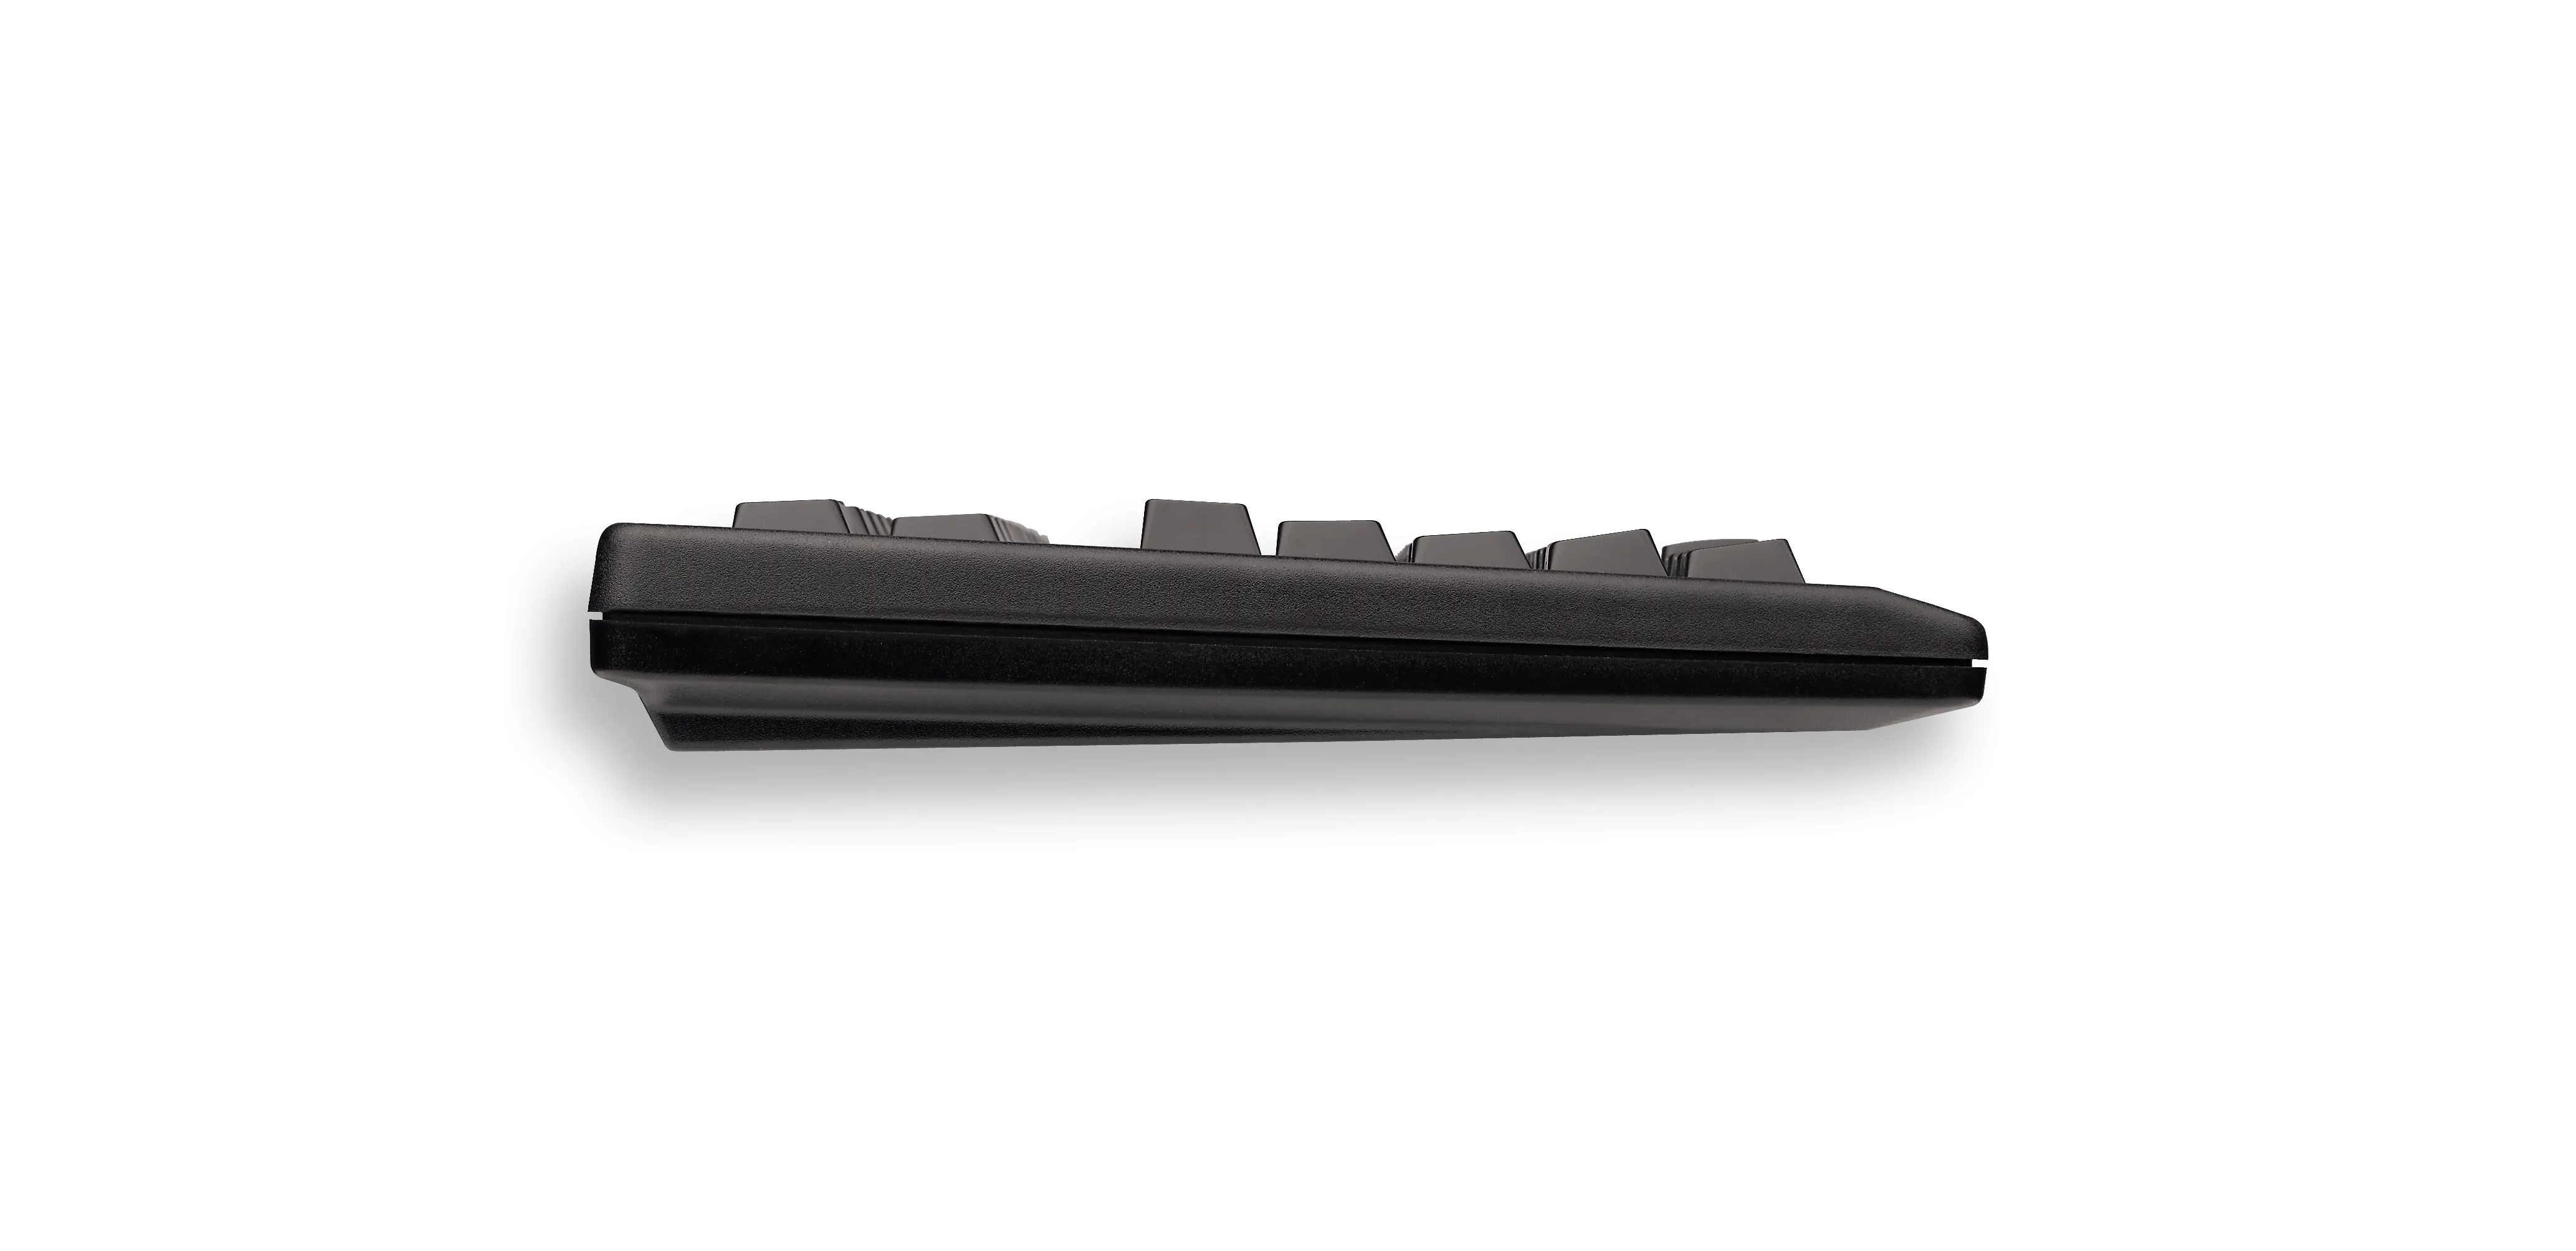 Vente CHERRY TouchBoard G80-11900 TOUCHBOARD Clavier CHERRY au meilleur prix - visuel 6